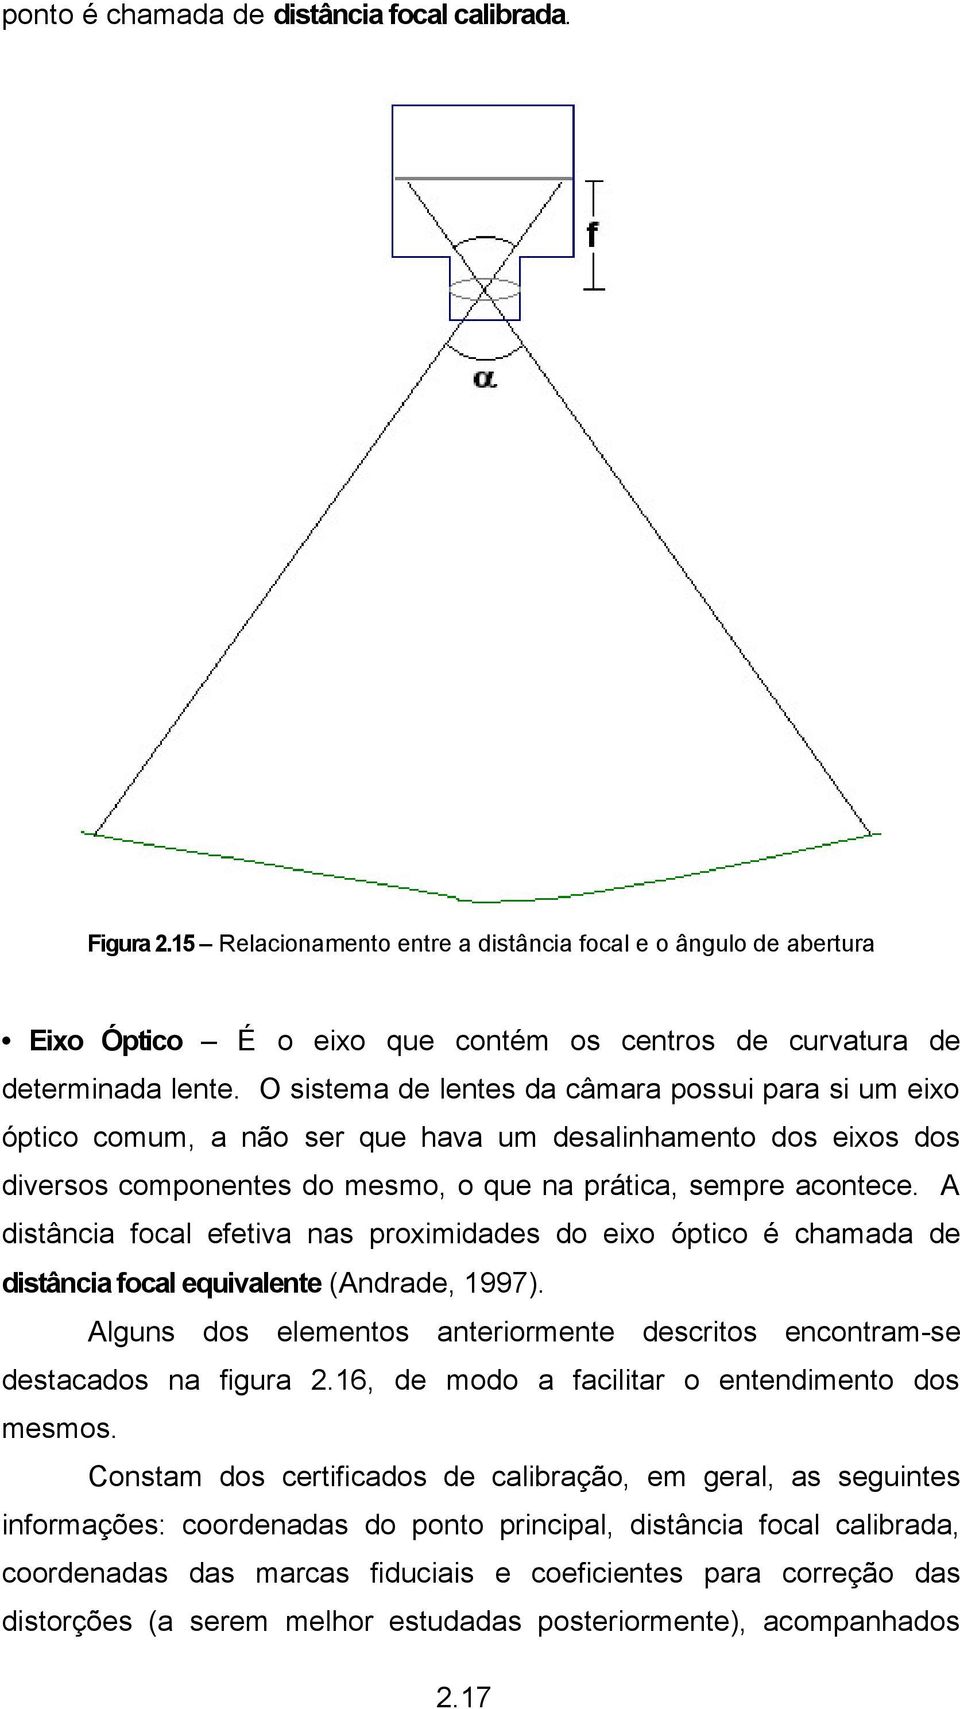 A distância focal efetiva nas proximidades do eixo óptico é chamada de distância focal equivalente (Andrade, 1997). Alguns dos elementos anteriormente descritos encontram-se destacados na figura 2.